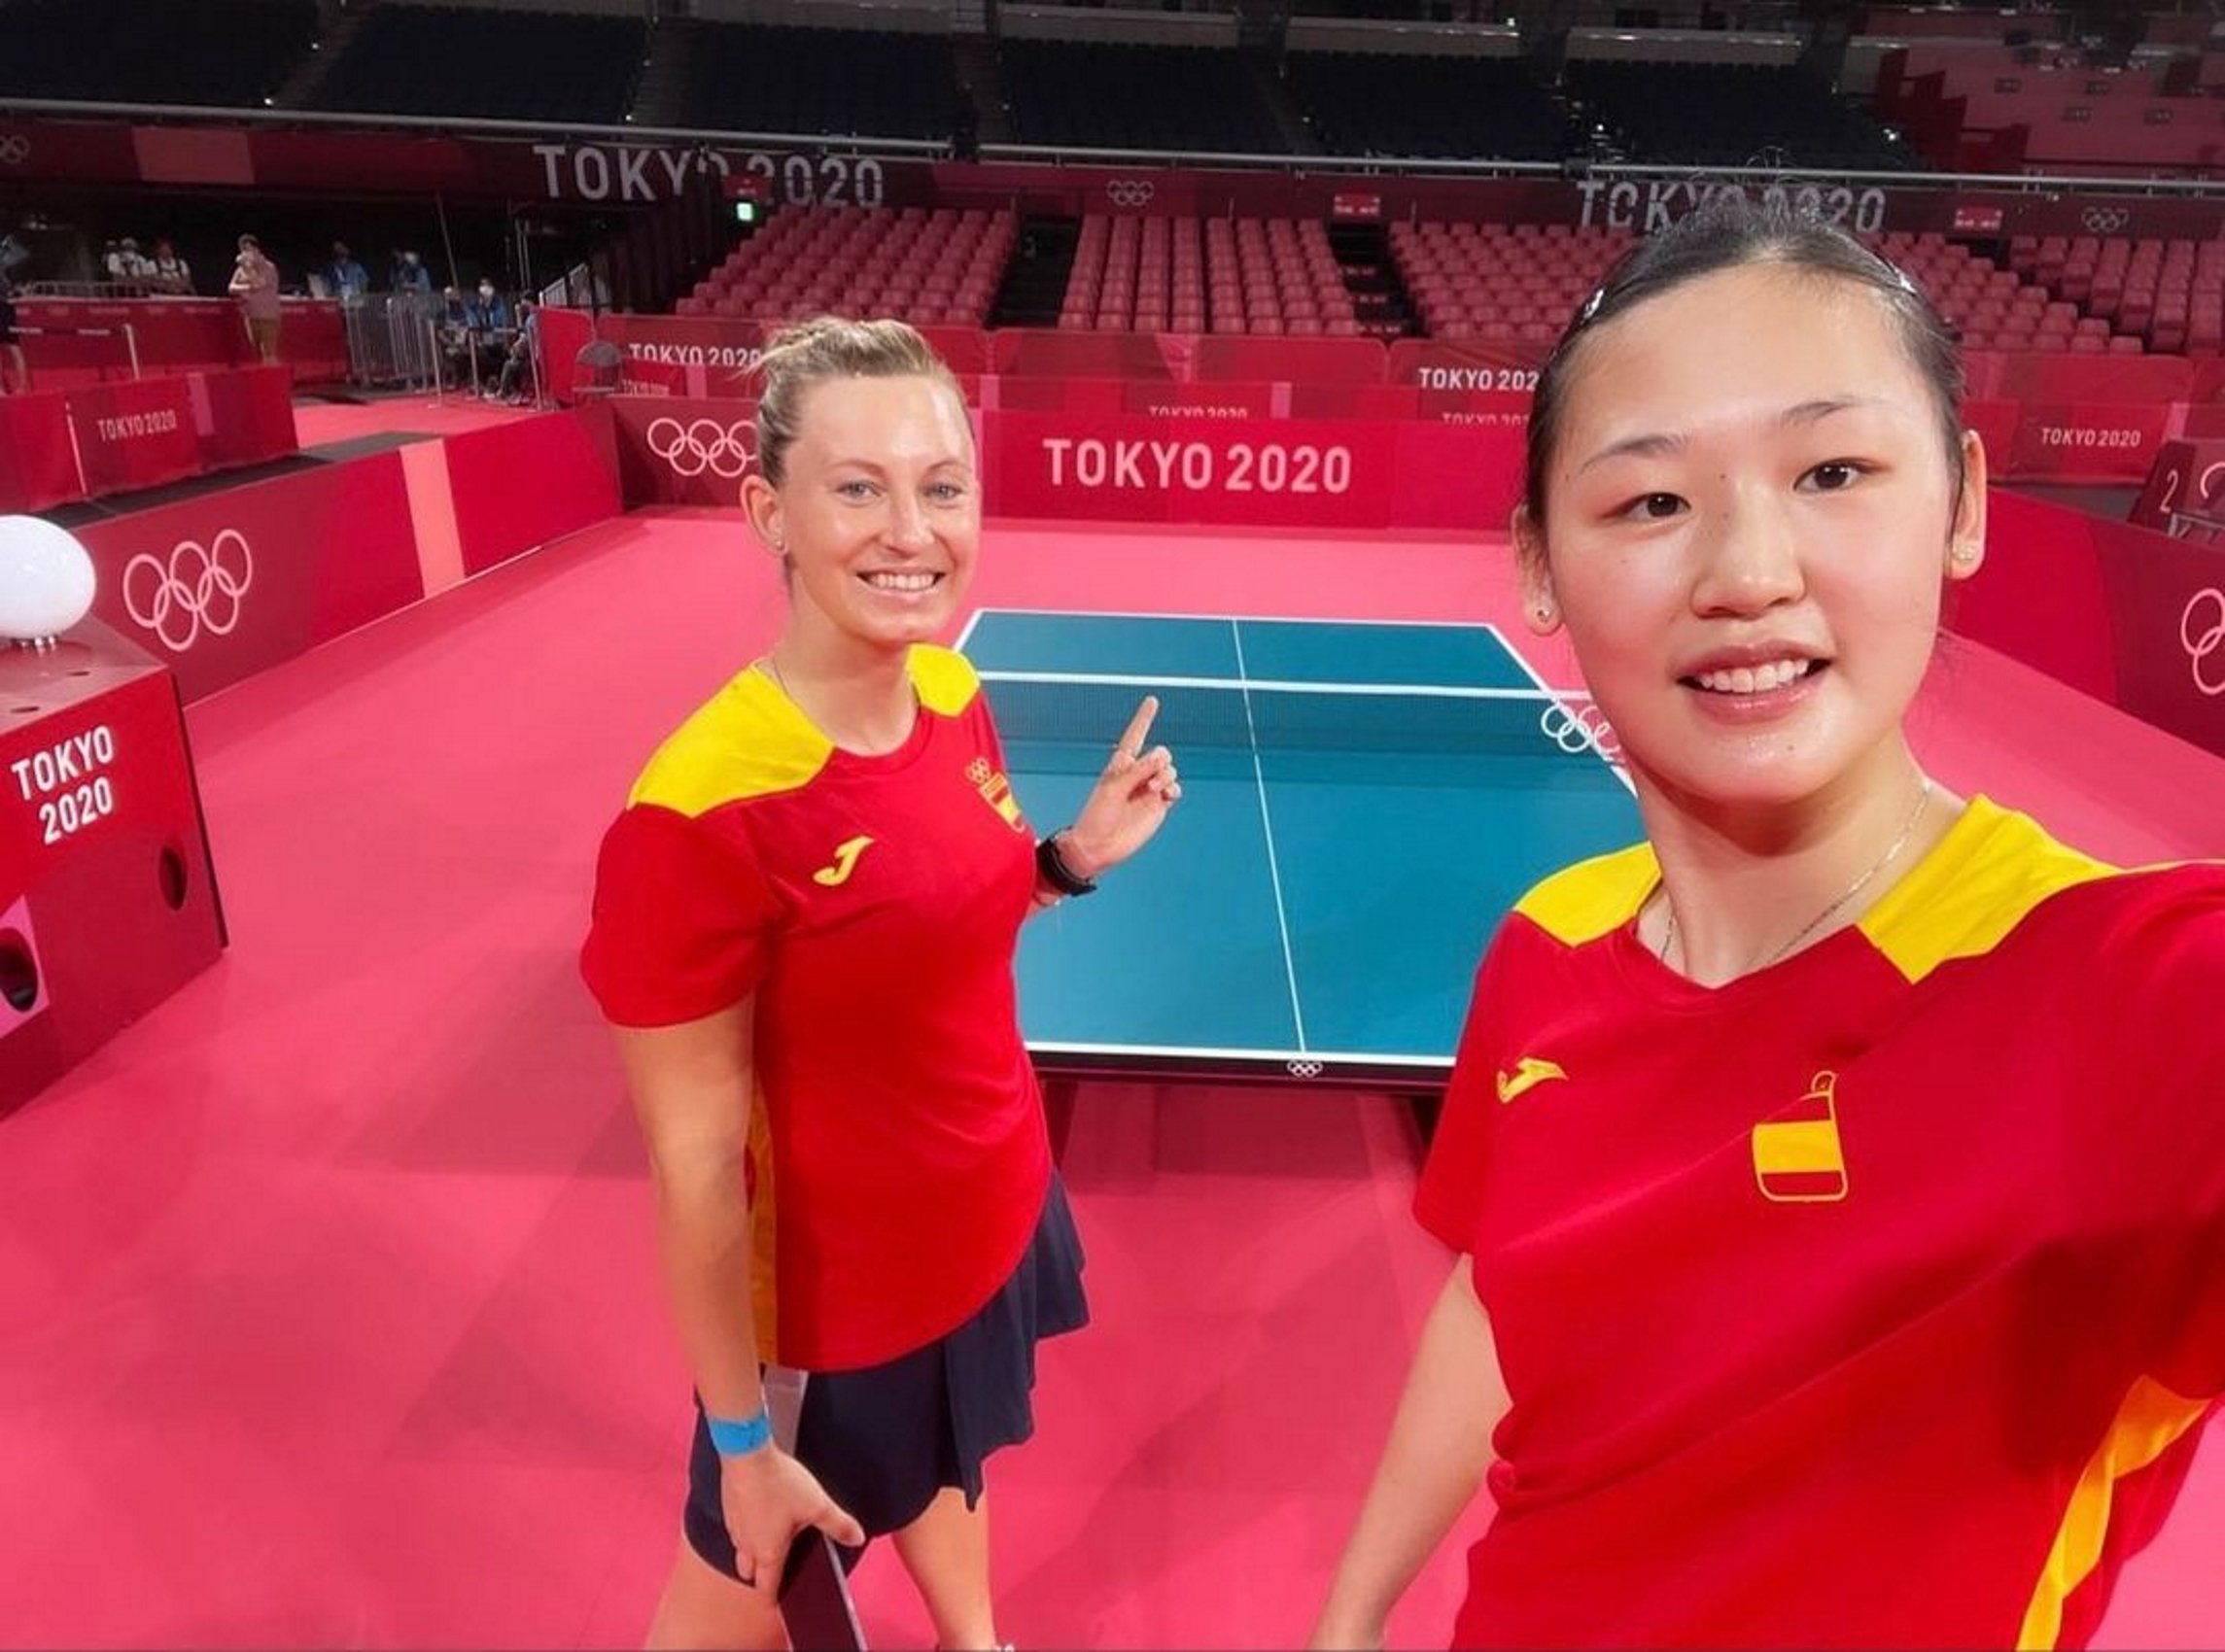 Gran gesto por el catalán de las olímpicas María Xiao y Galia Dvorak